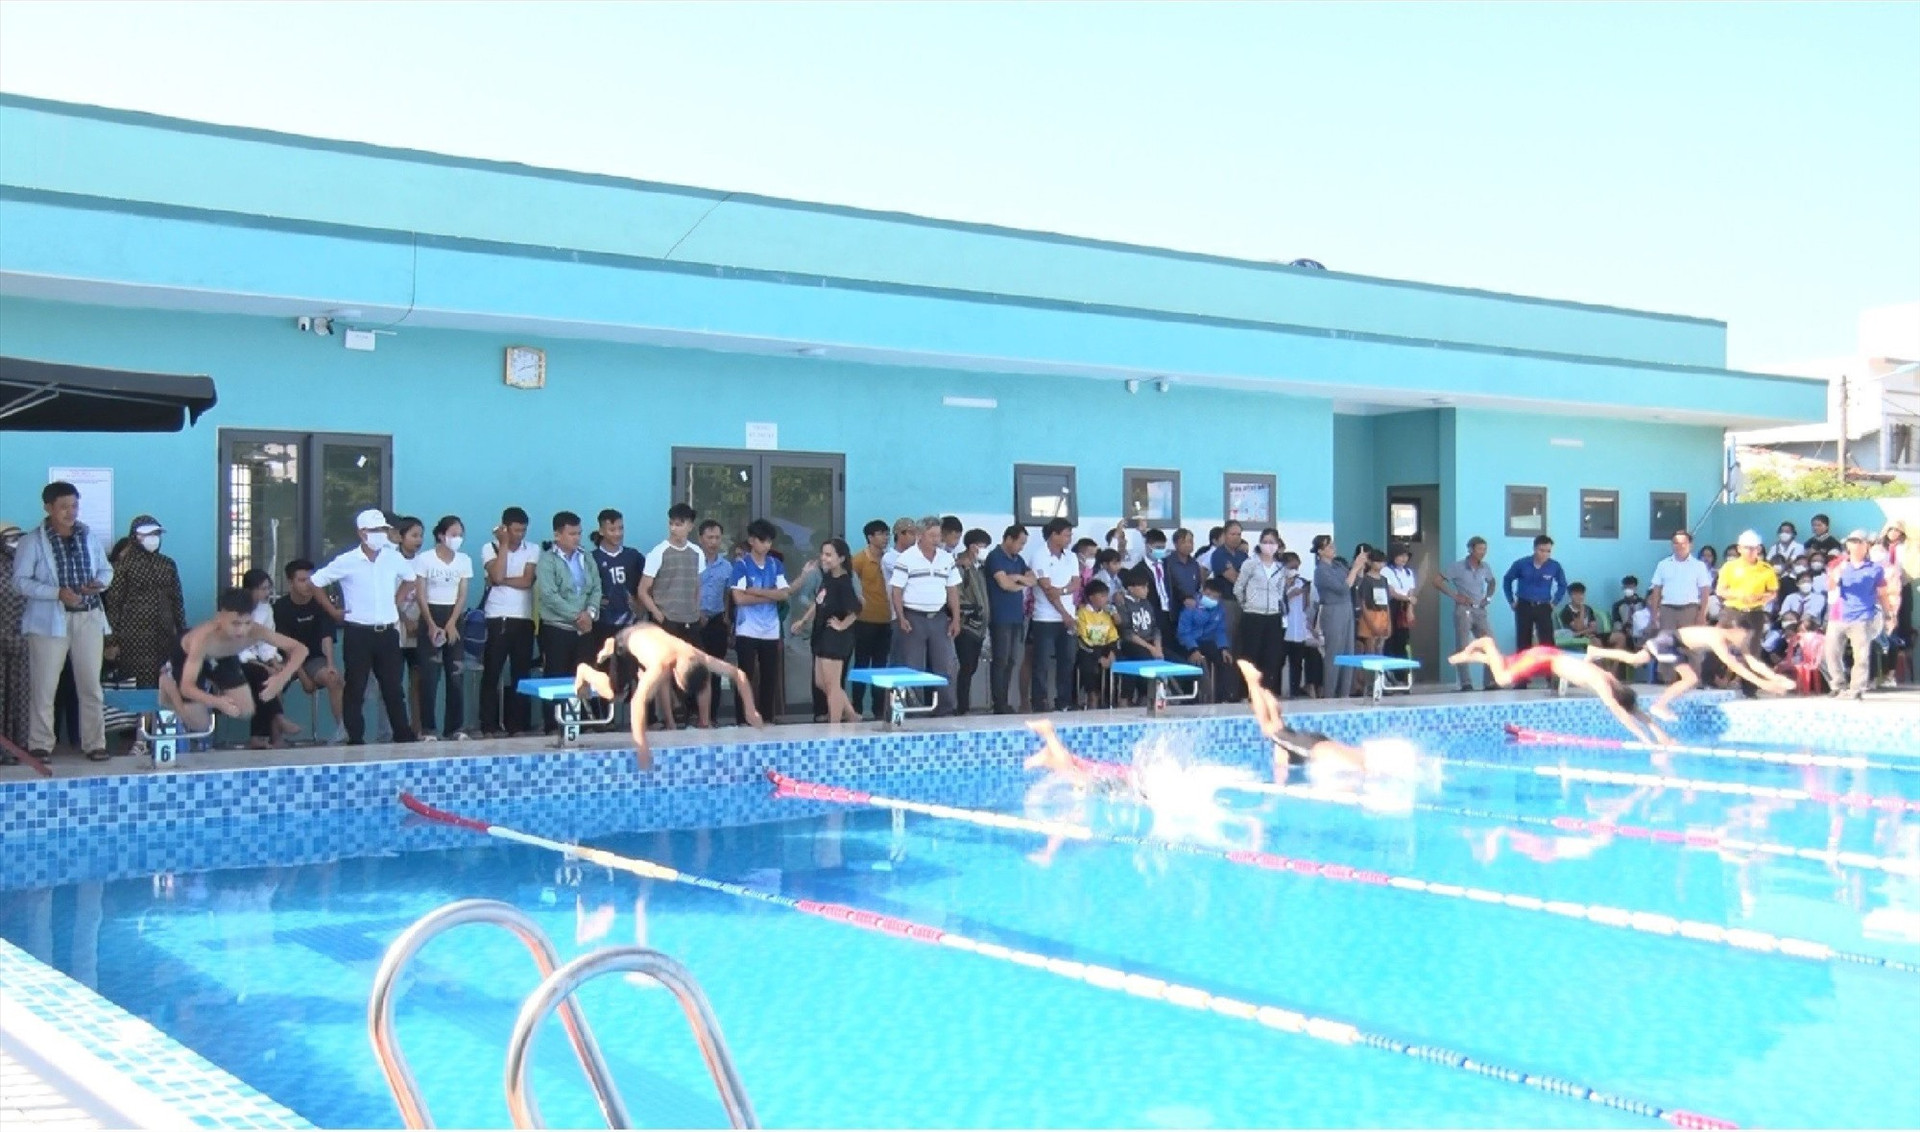 UBND huyện Phú Ninh tổ chức giải bơi dành cho học sinh cấp THCS và THPT năm học 2022 - 2023. Ảnh: P.V